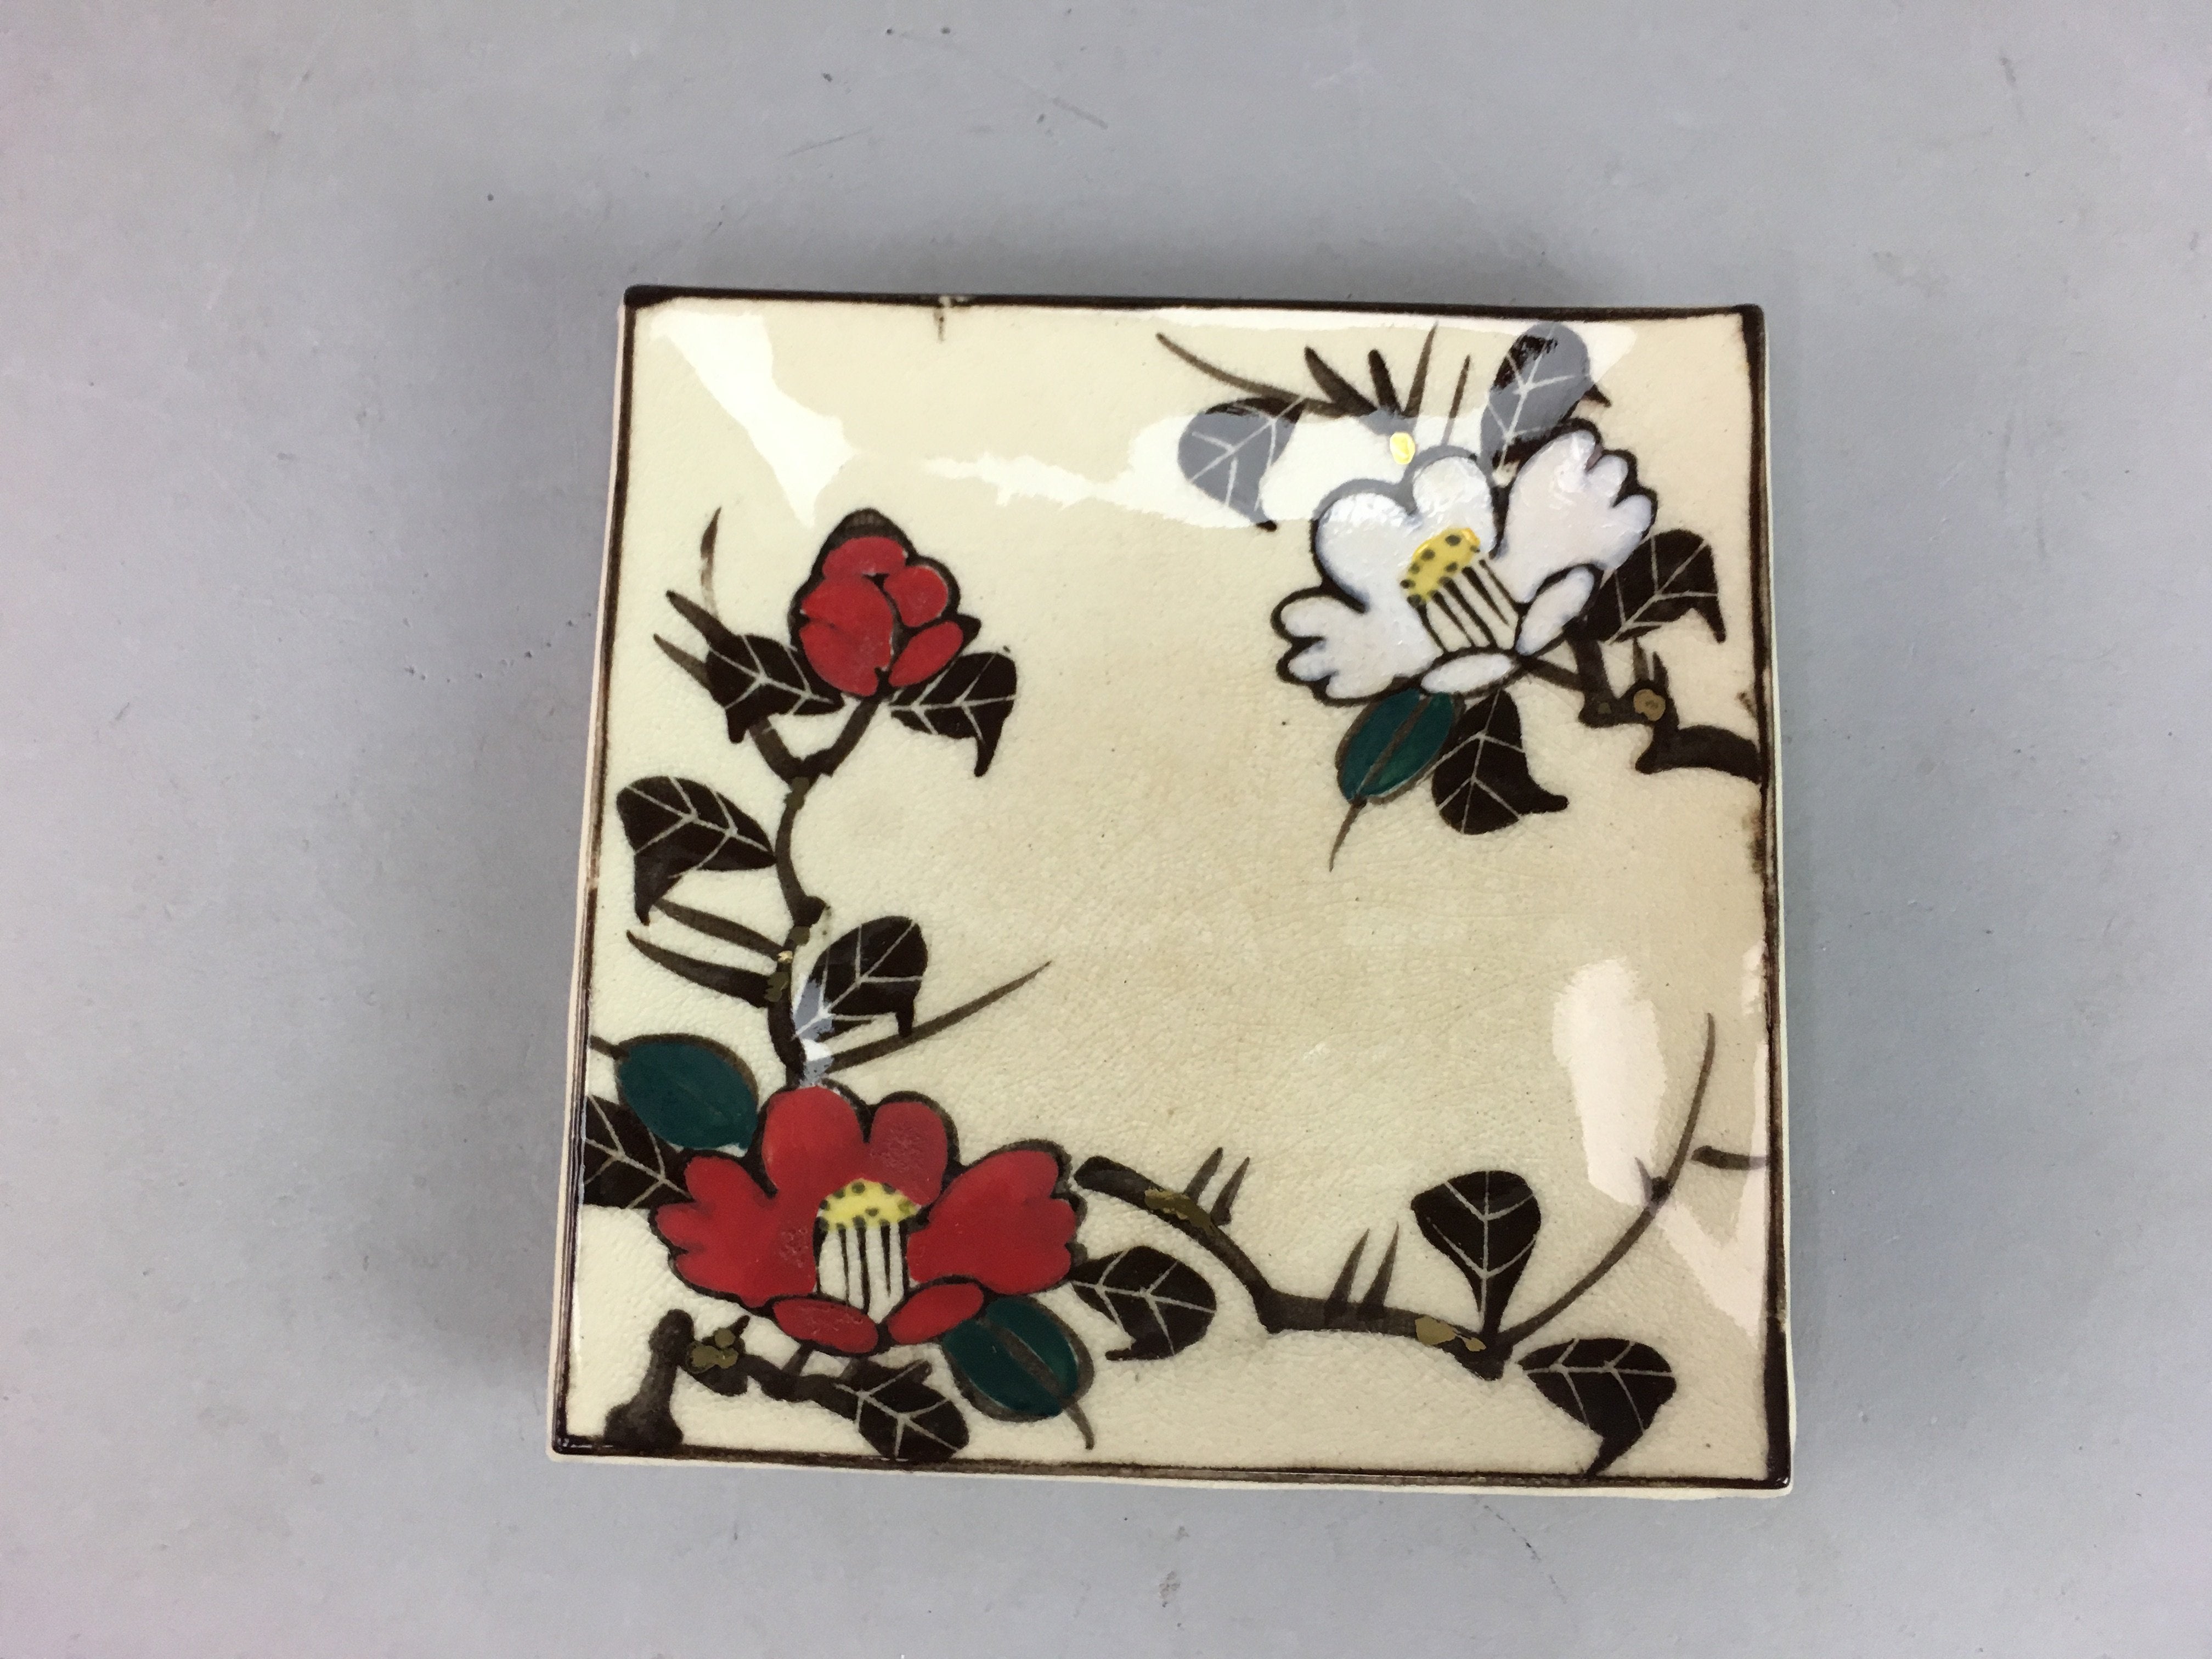 Japanese Ceramic Square Plate Vtg Pottery Floral Design Beige Sushi PT96